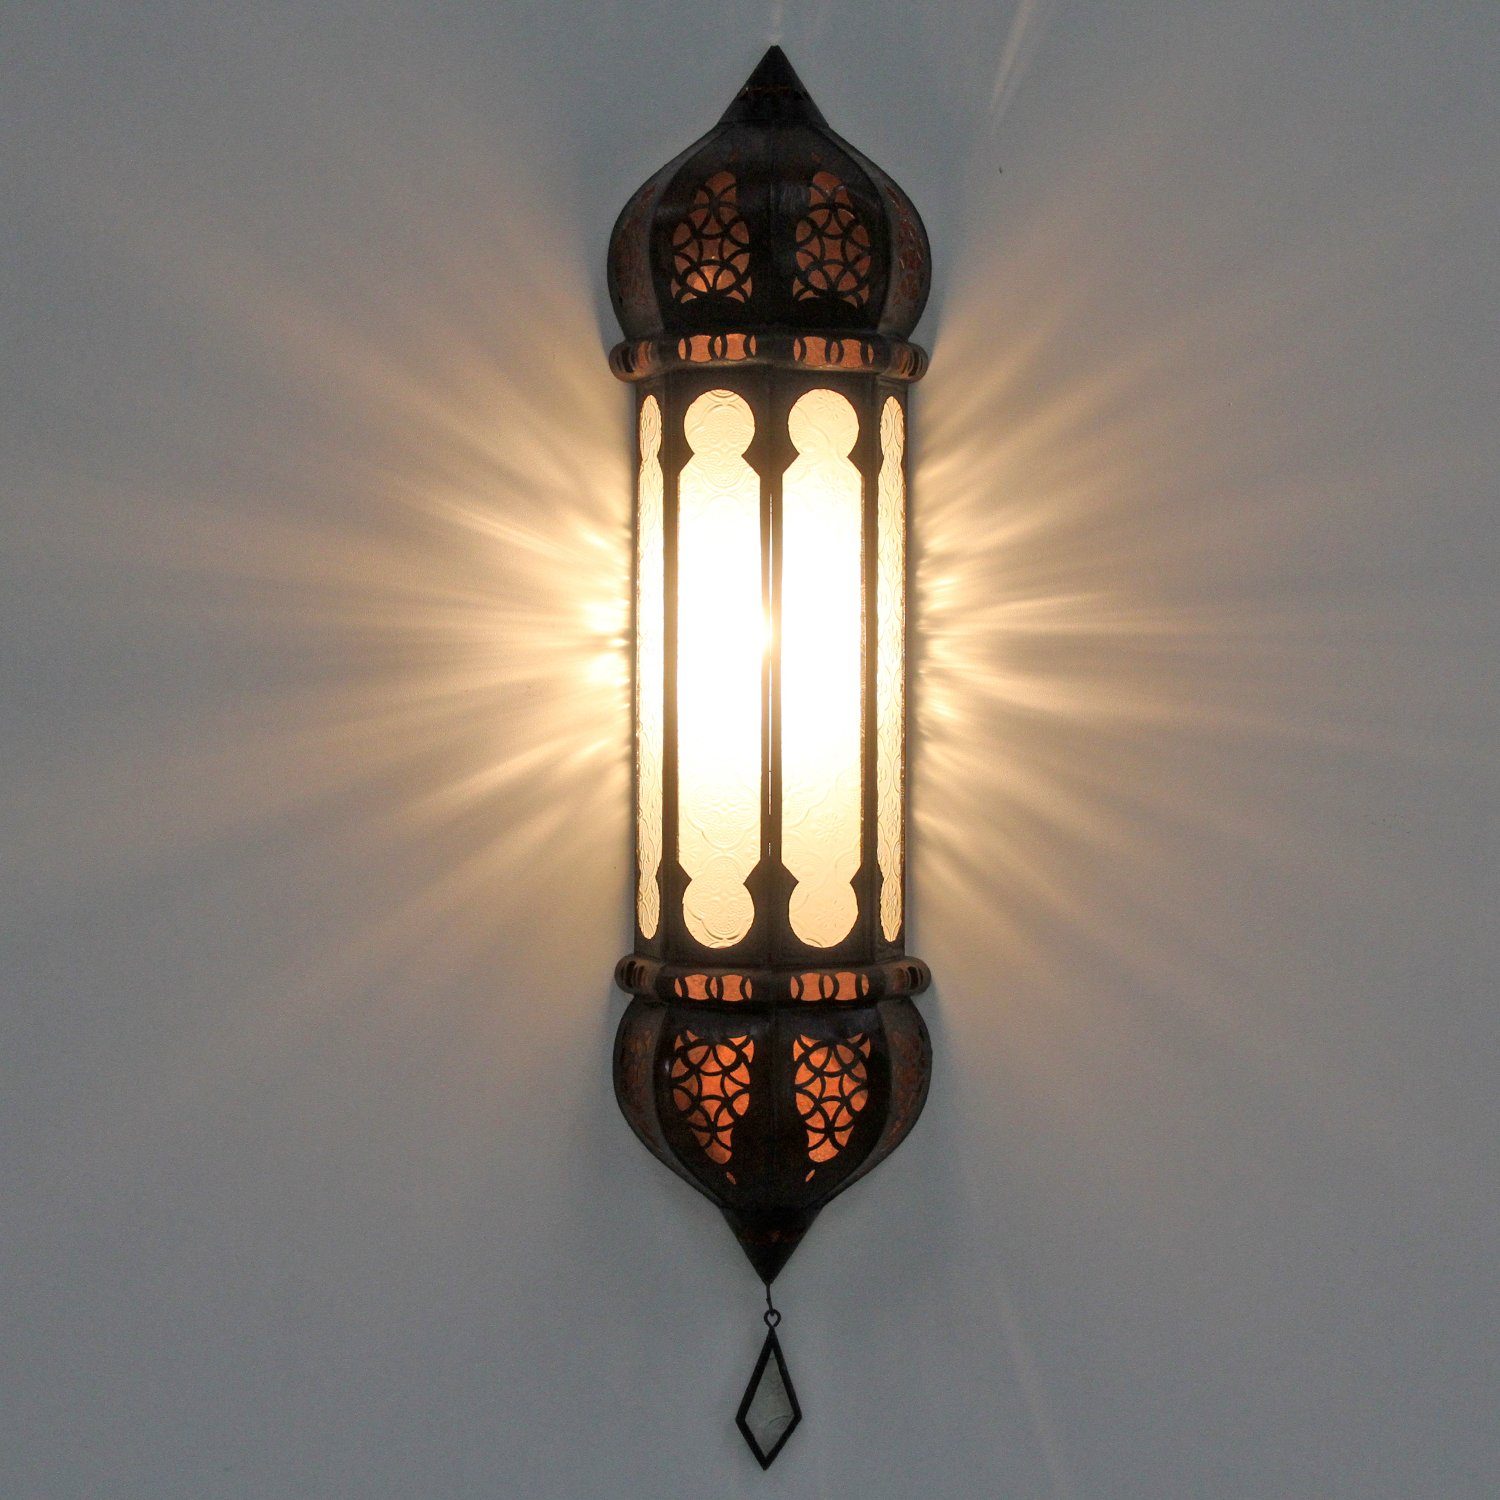 Wandleuchte aus Ruya wie Marokkanische Nacht Wandleuchte Weiß, Wandlampe 1001 Moro Casa handgefertigte